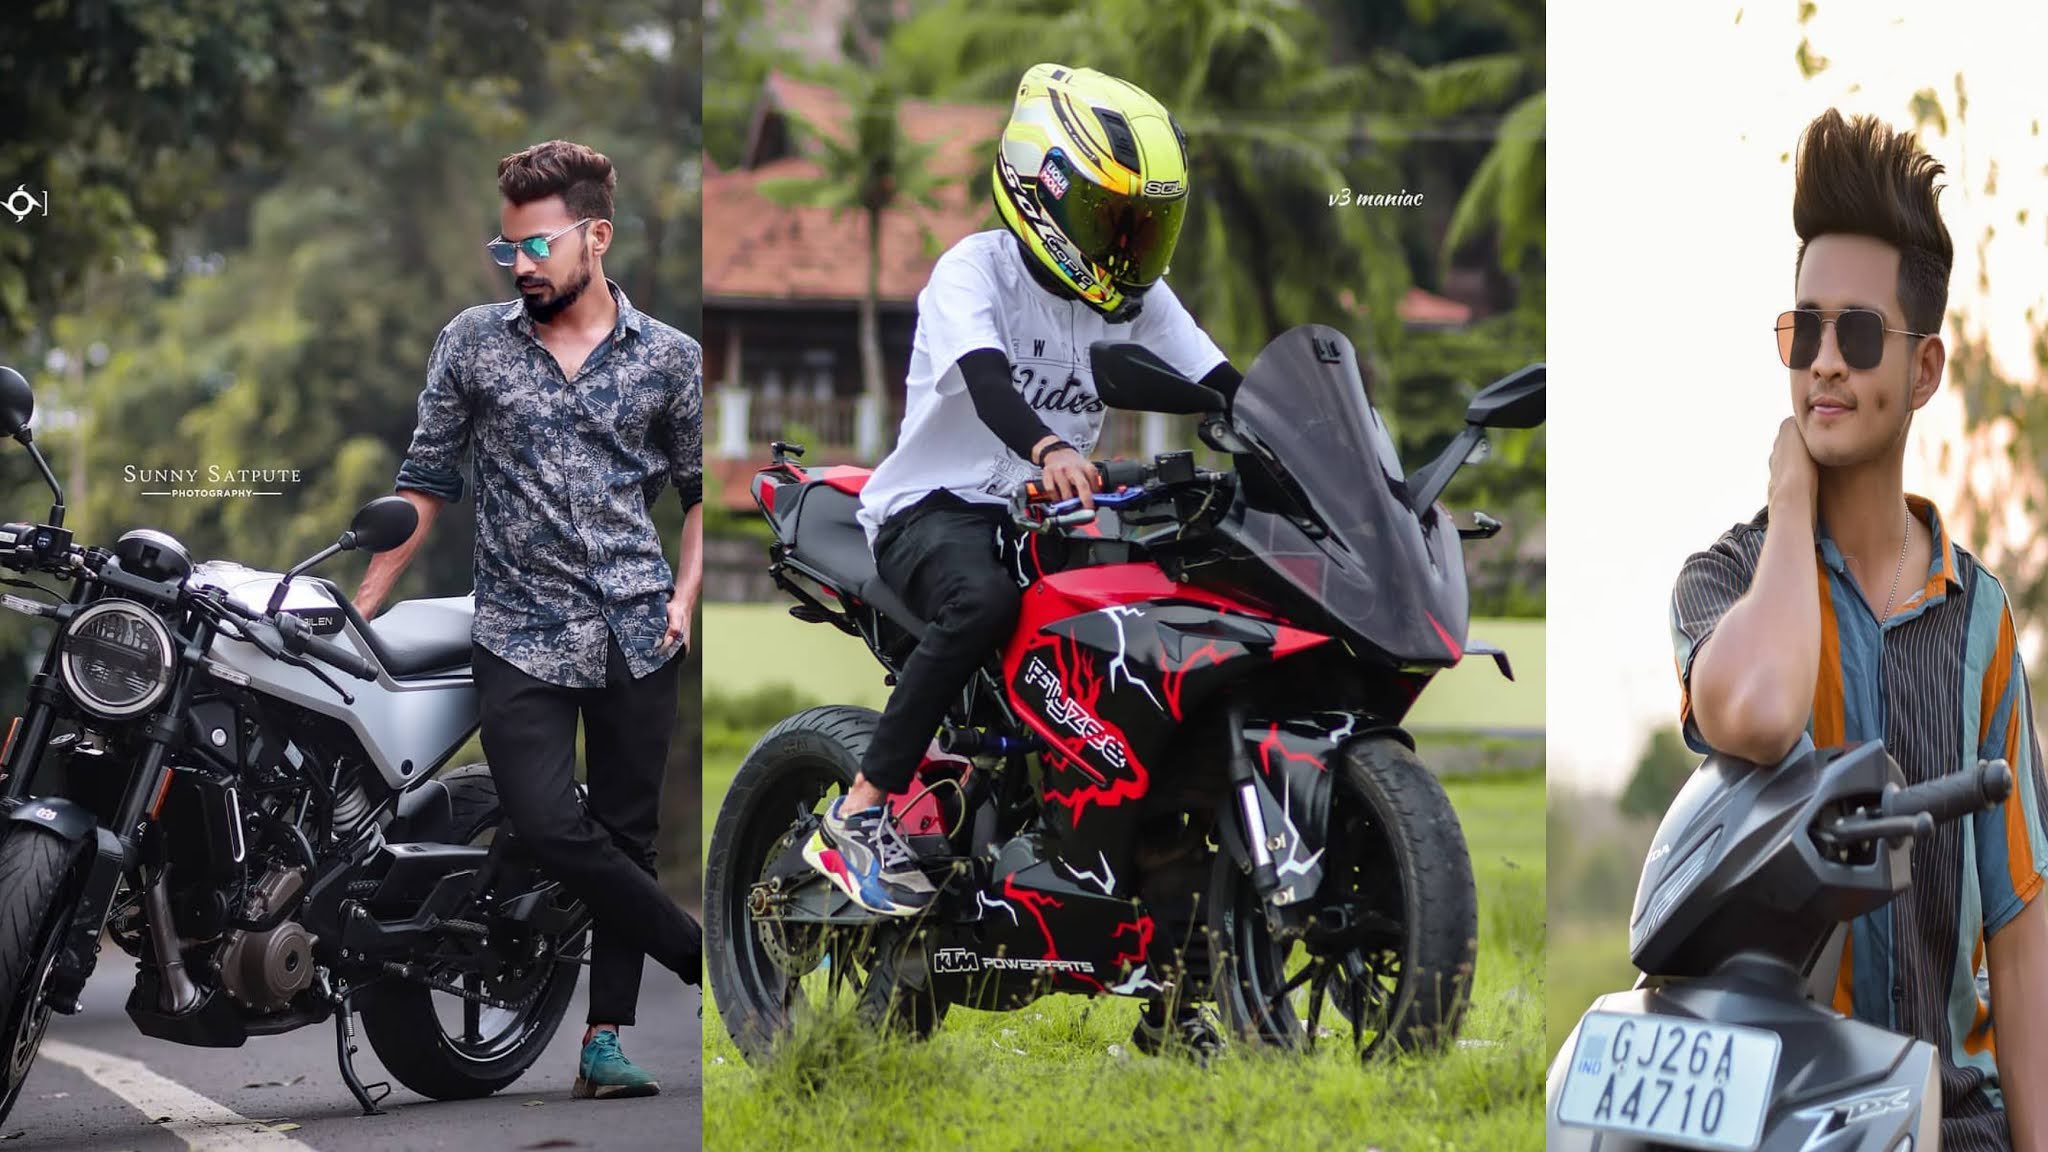 Bike Photoshoot Ideas: 100+ Stunning Photoshoot Ideas On A Motorcycle -  OrigaZoom